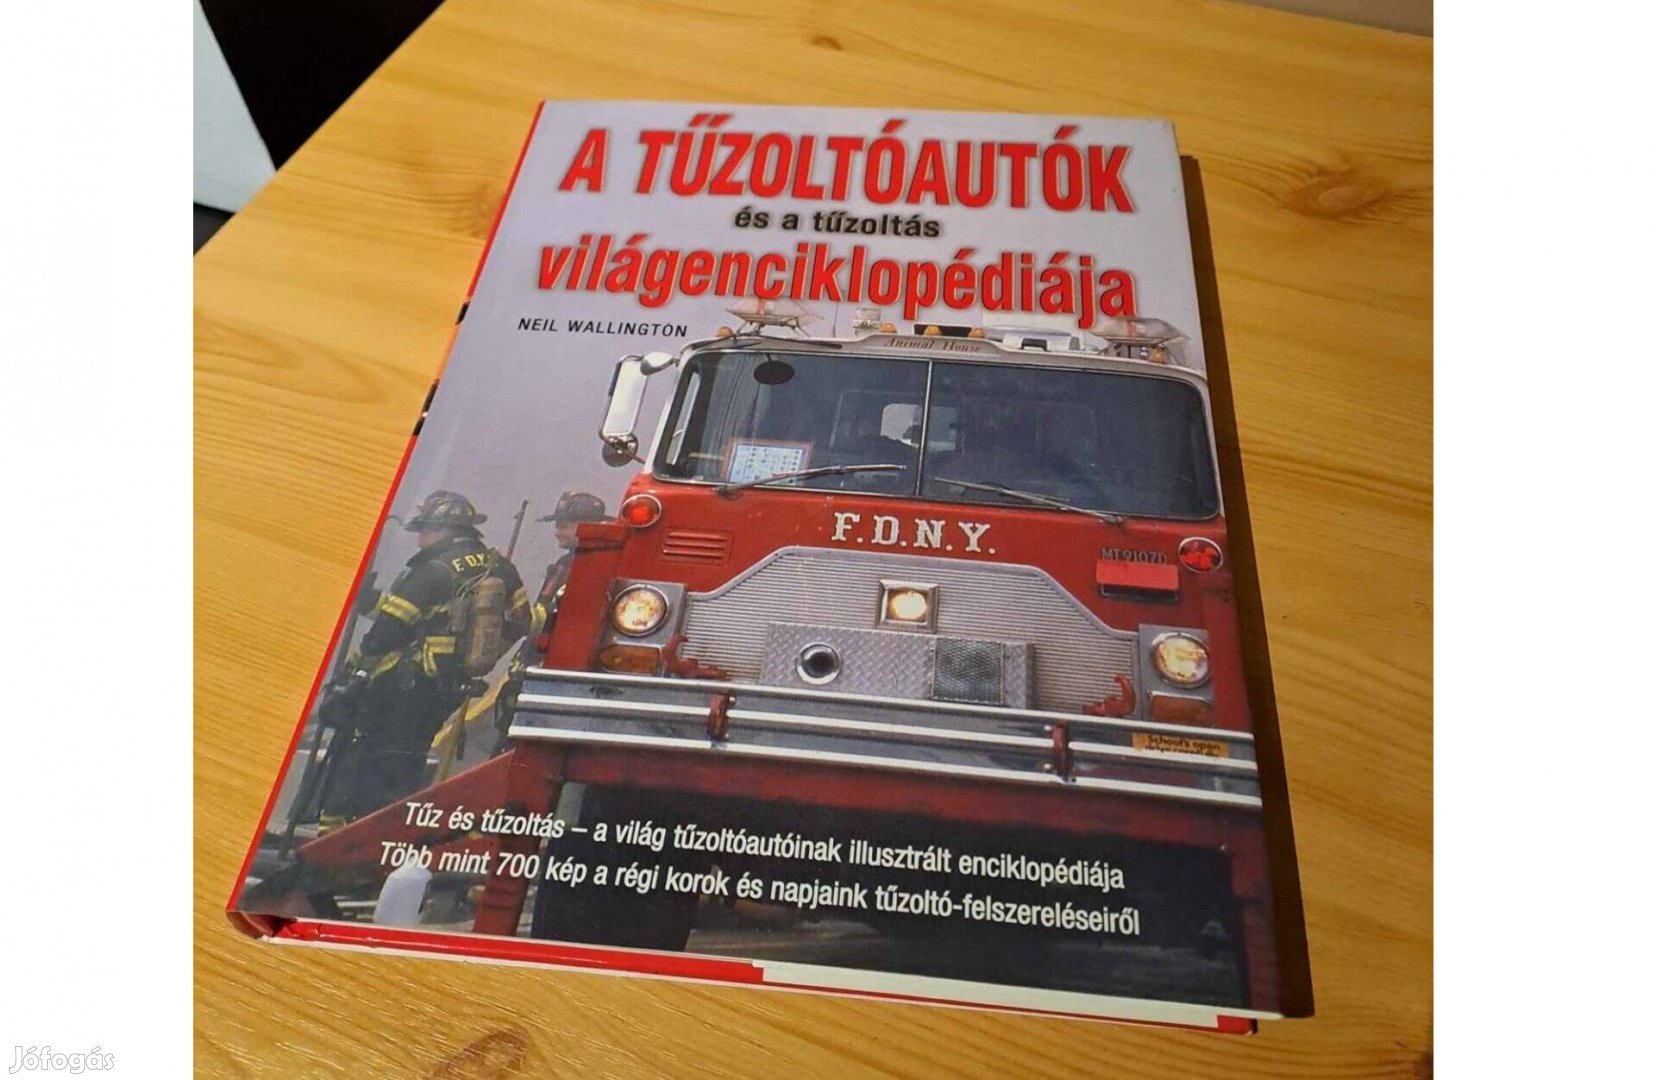 A Tűzoltóautók és tűzoltás világenciklopédiája könyv